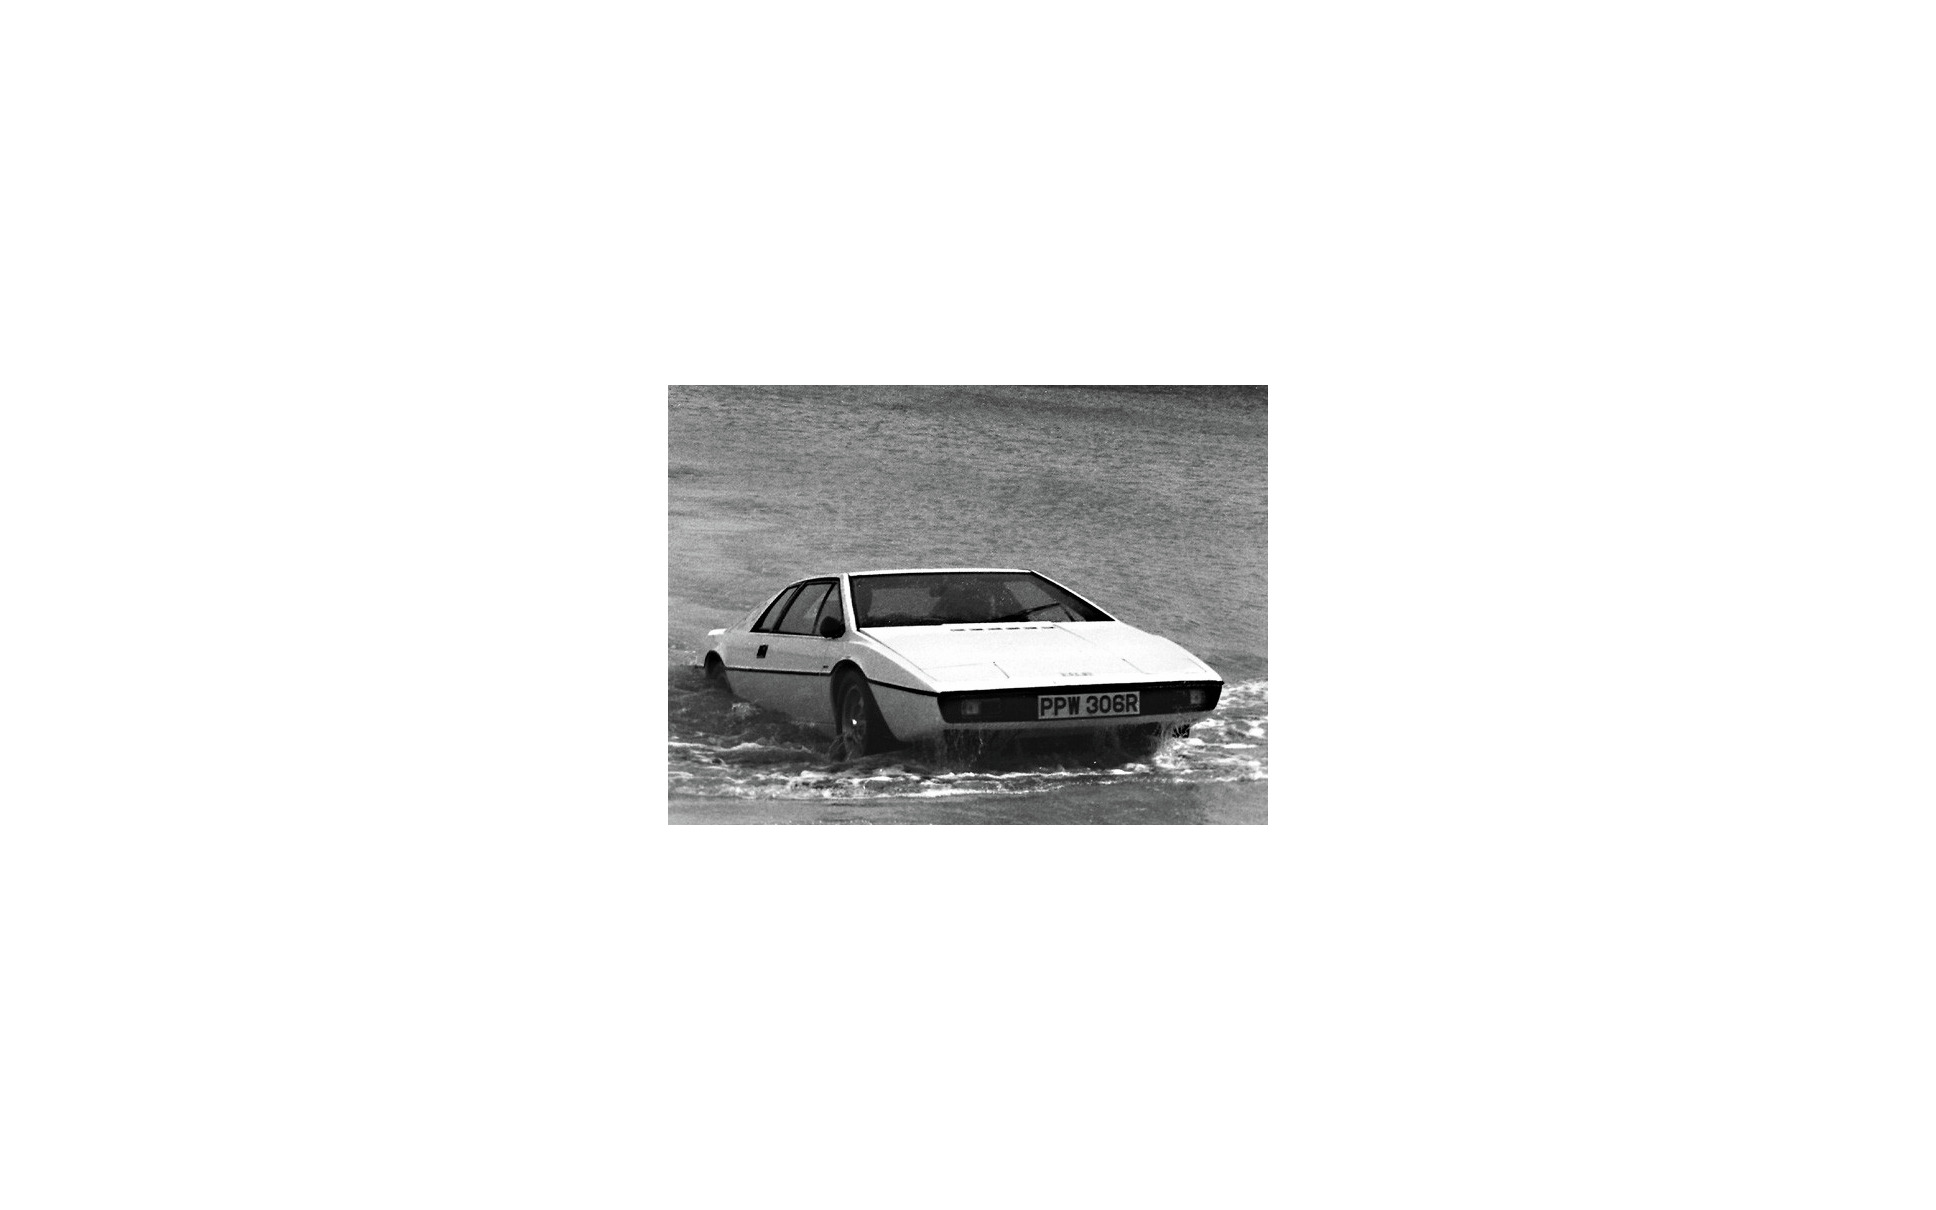 ロータス エヴォーラ にワンオフ 007ボンドカー エスプリs1 をイメージ 6枚目の写真 画像 レスポンス Response Jp